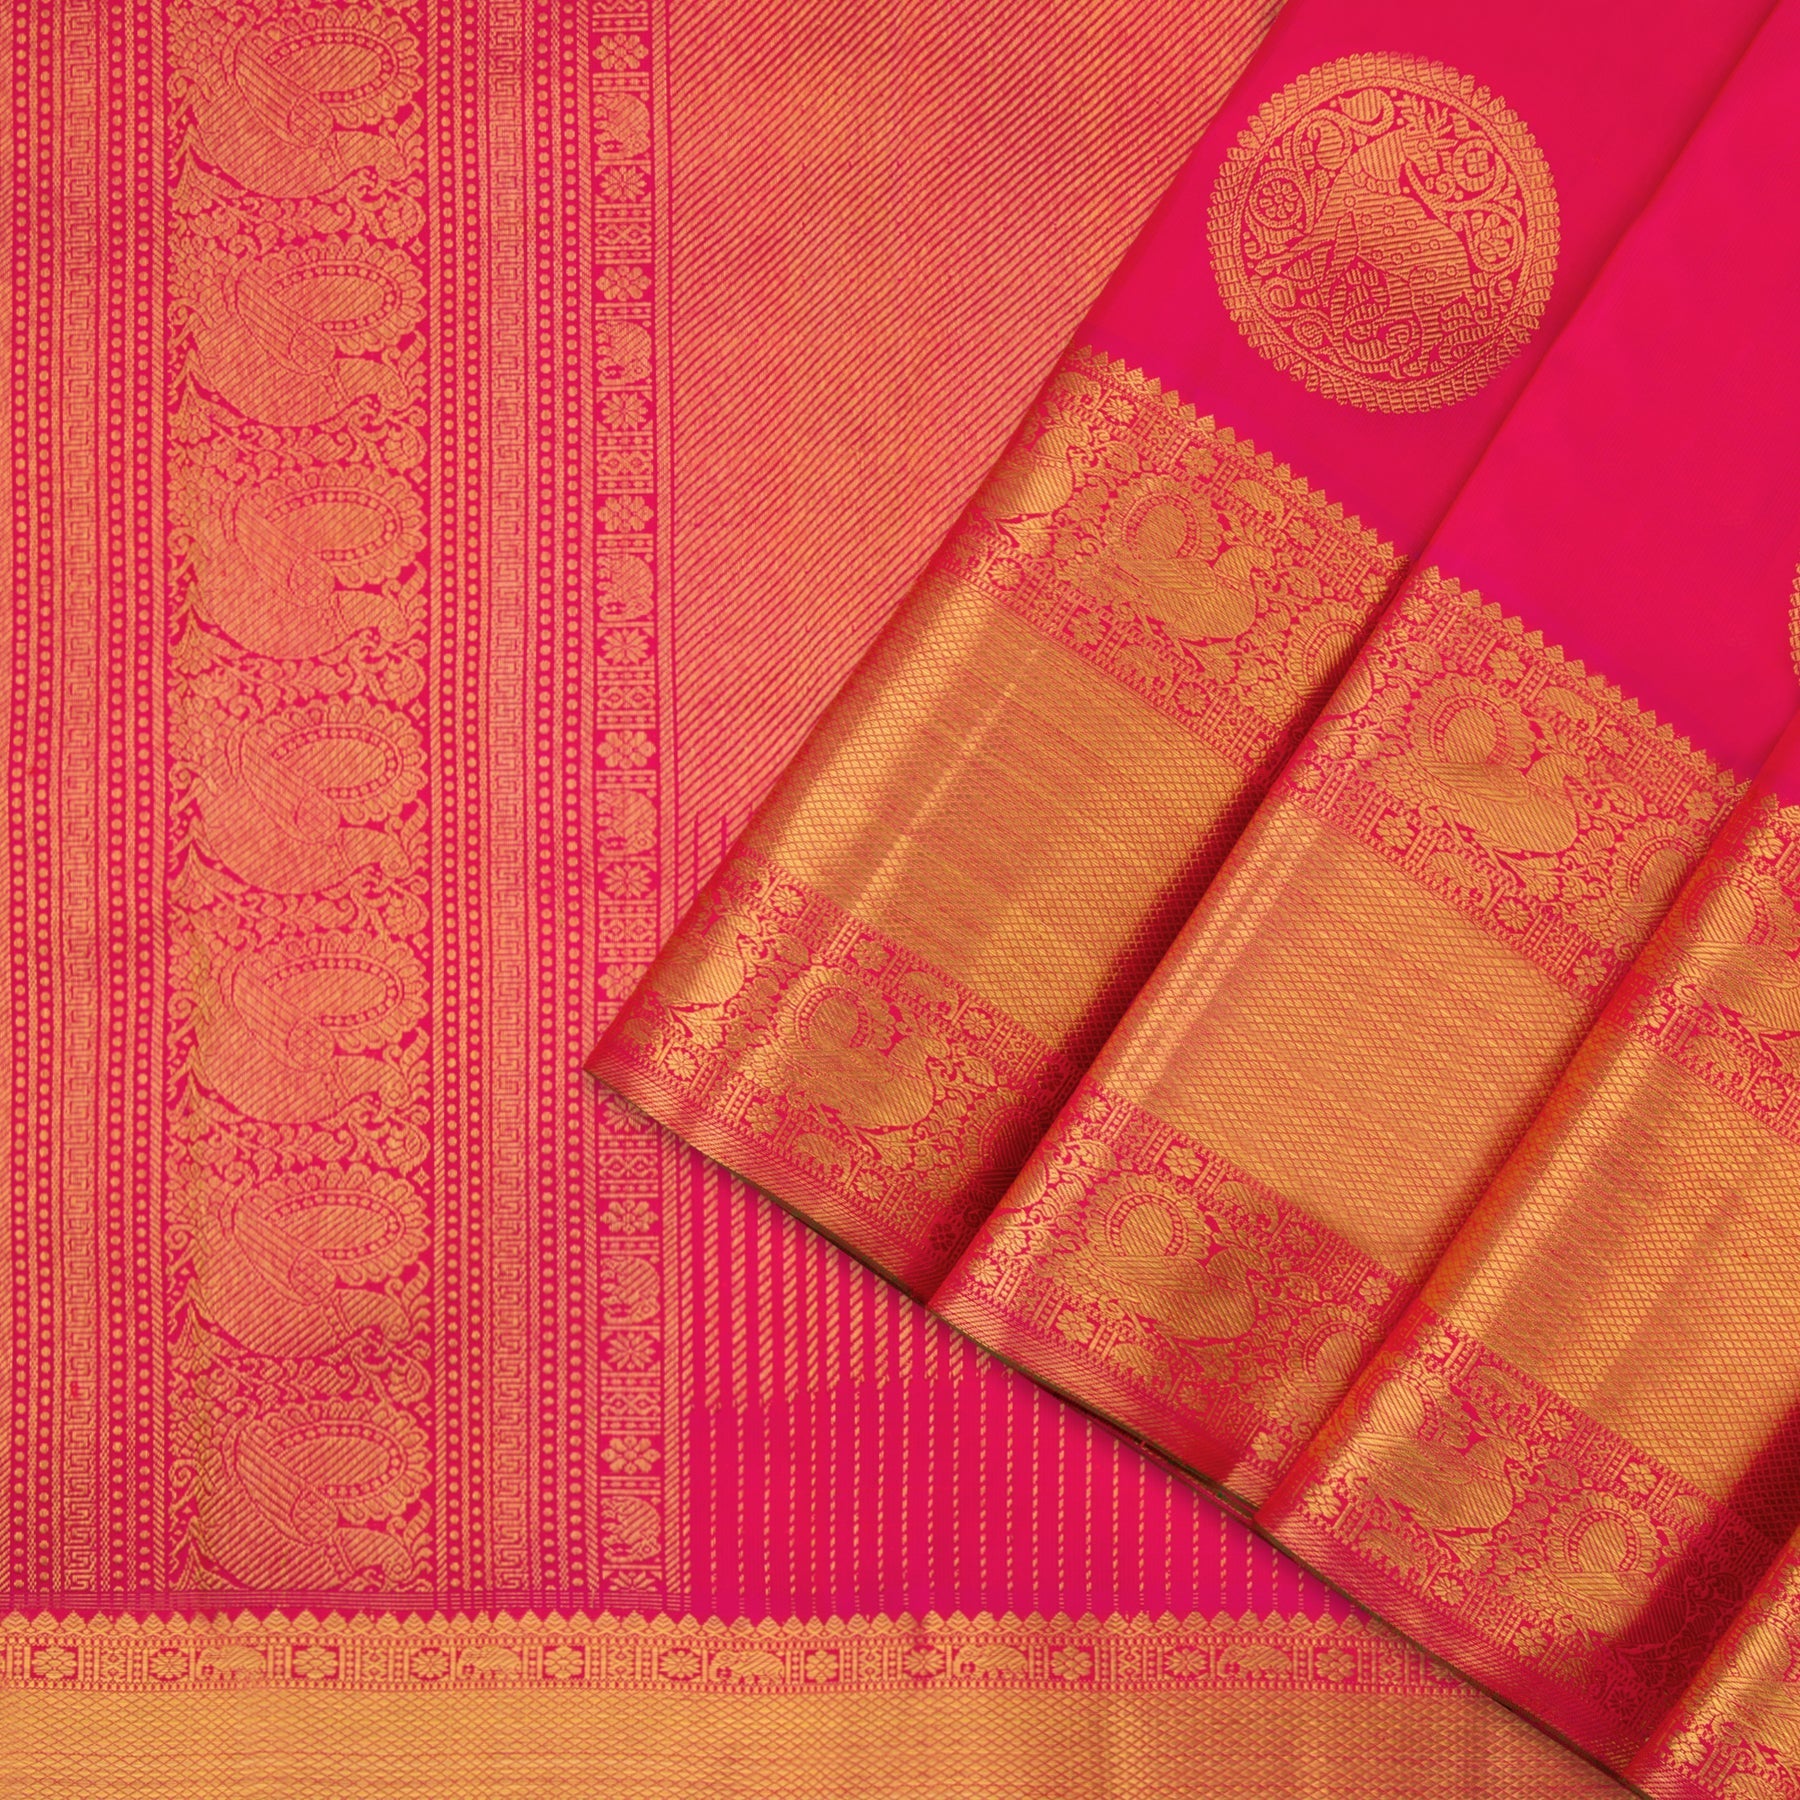 Kanakavalli Kanjivaram Silk Sari 110-01-120484 - Cover View